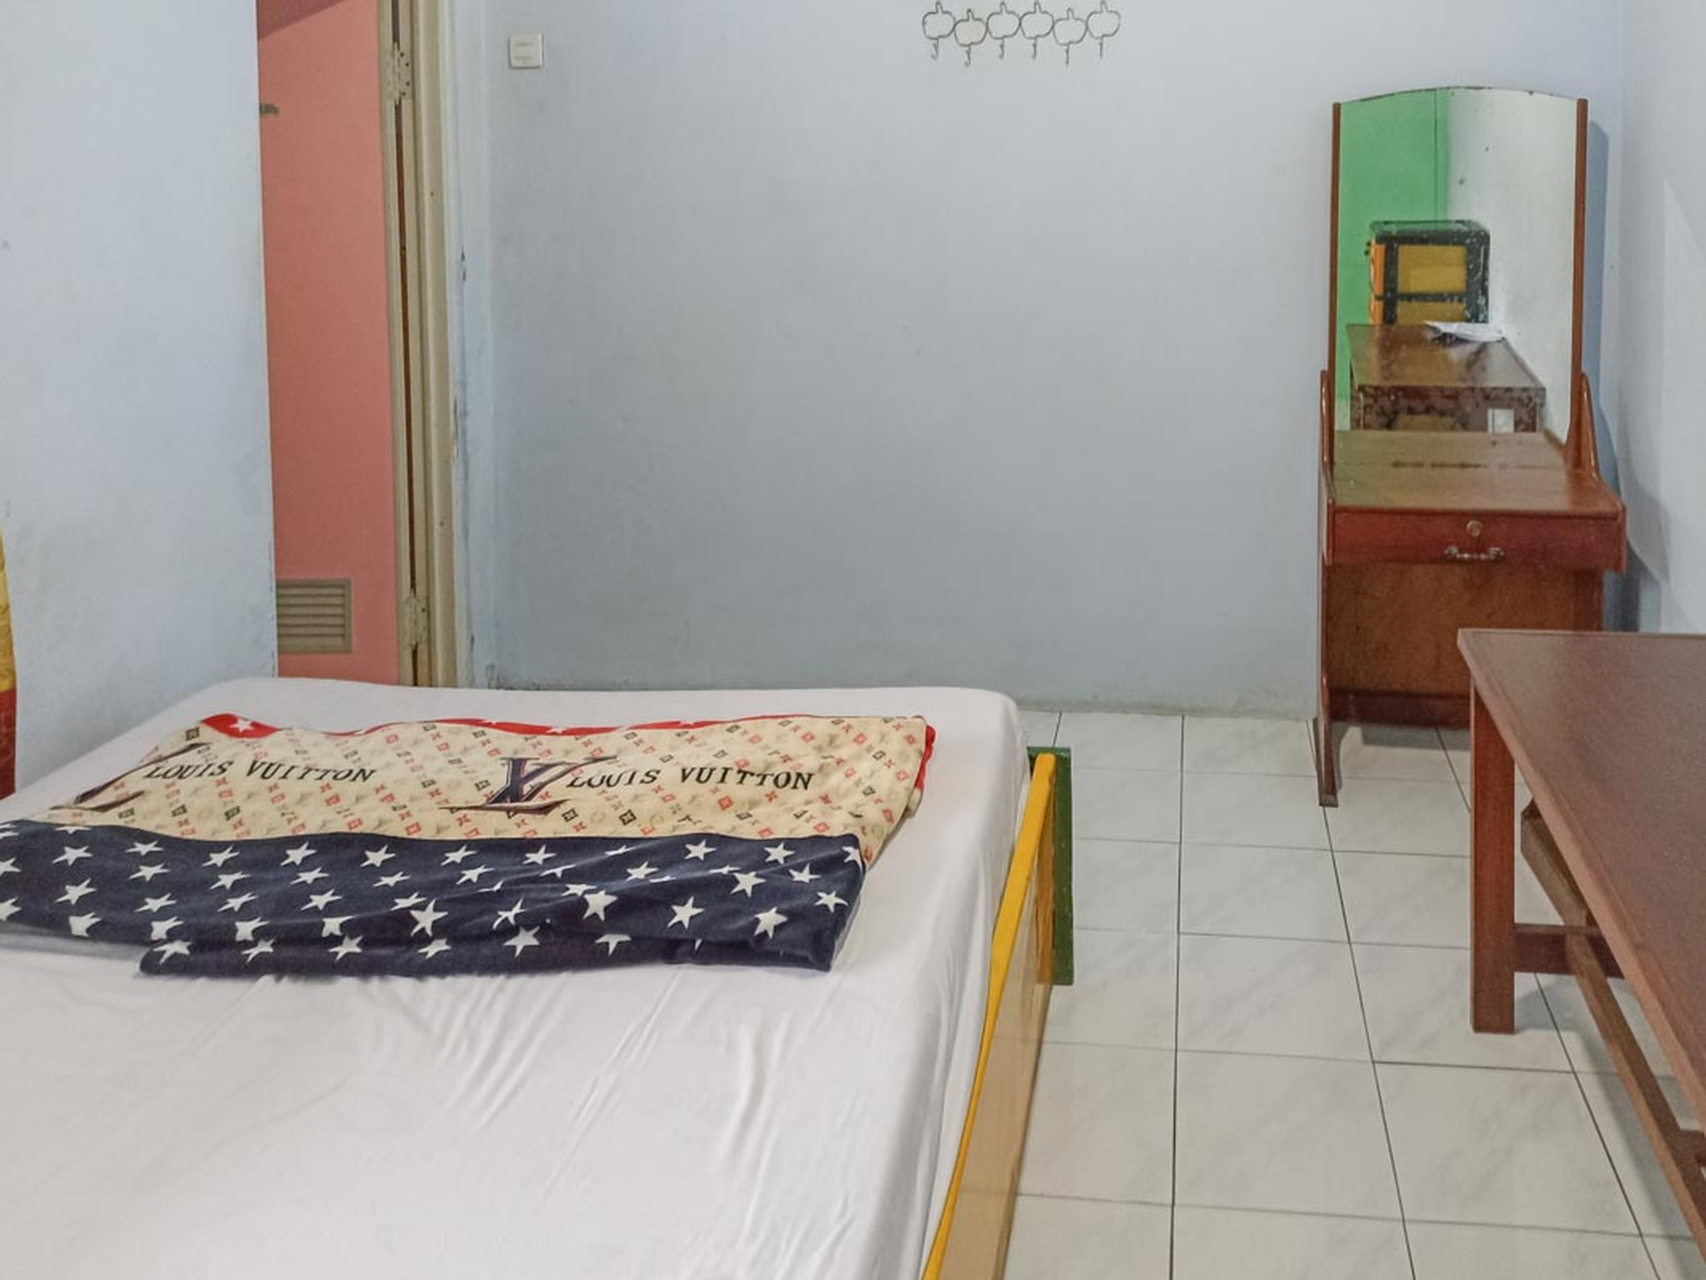 Bedroom 3, Asmoro Homestay at Desa Wisata Ranu Pani, Lumajang